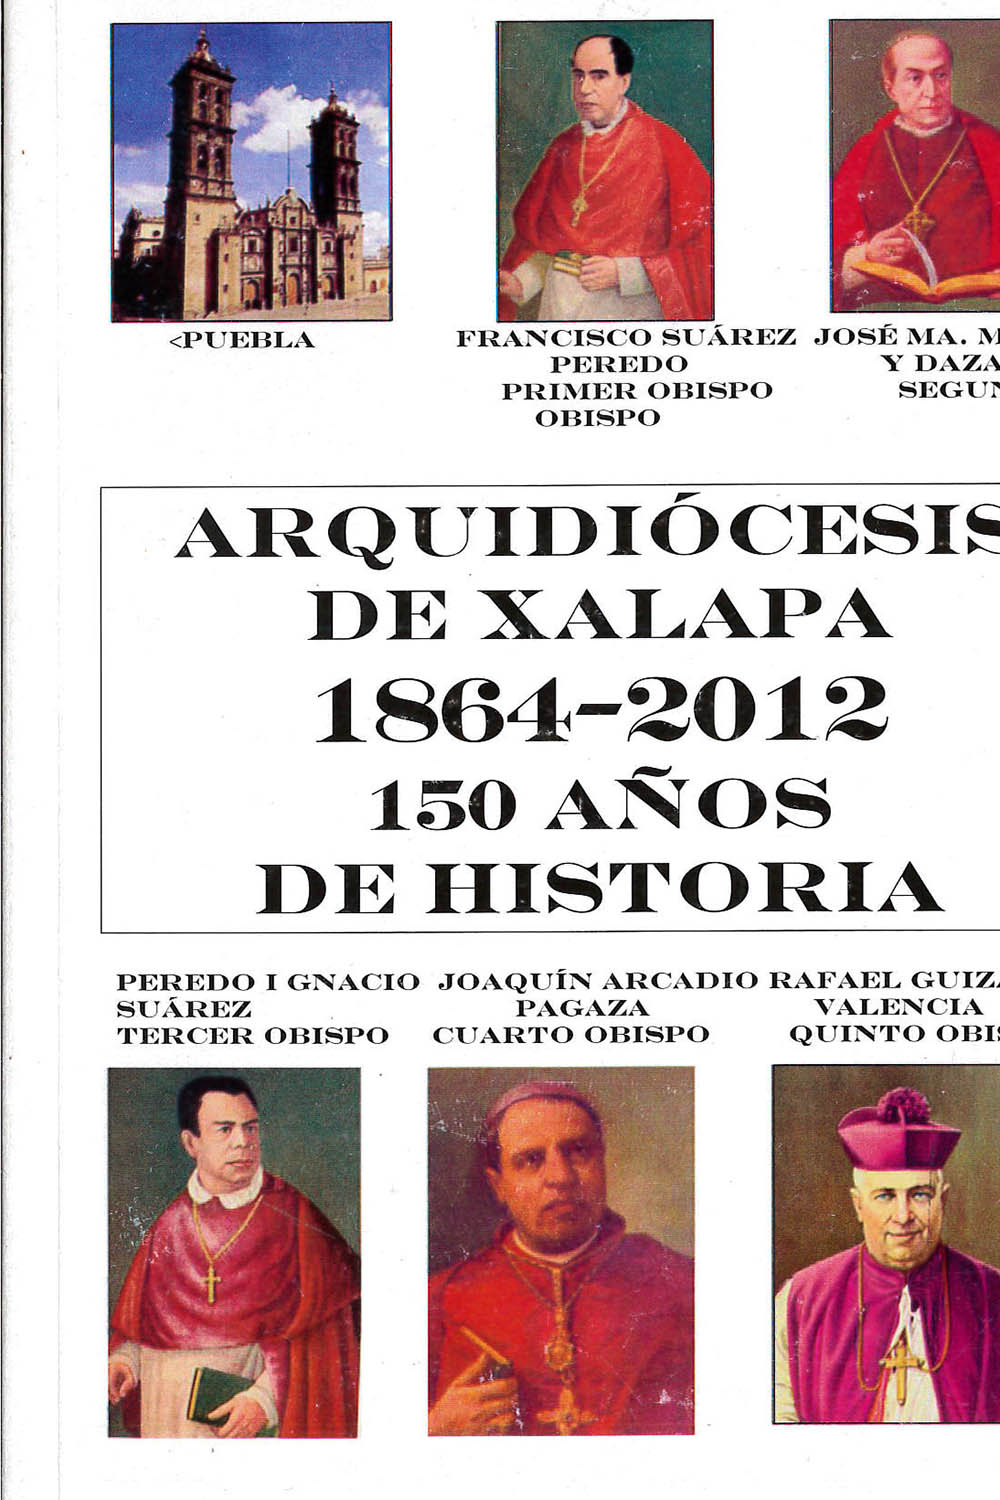 2 / 16 - BX1428,3 B38 Arquidiócesis de Xalapa 1864-2012 150 años de historia
Celestino Barradas - Ediciones San José, México 2012